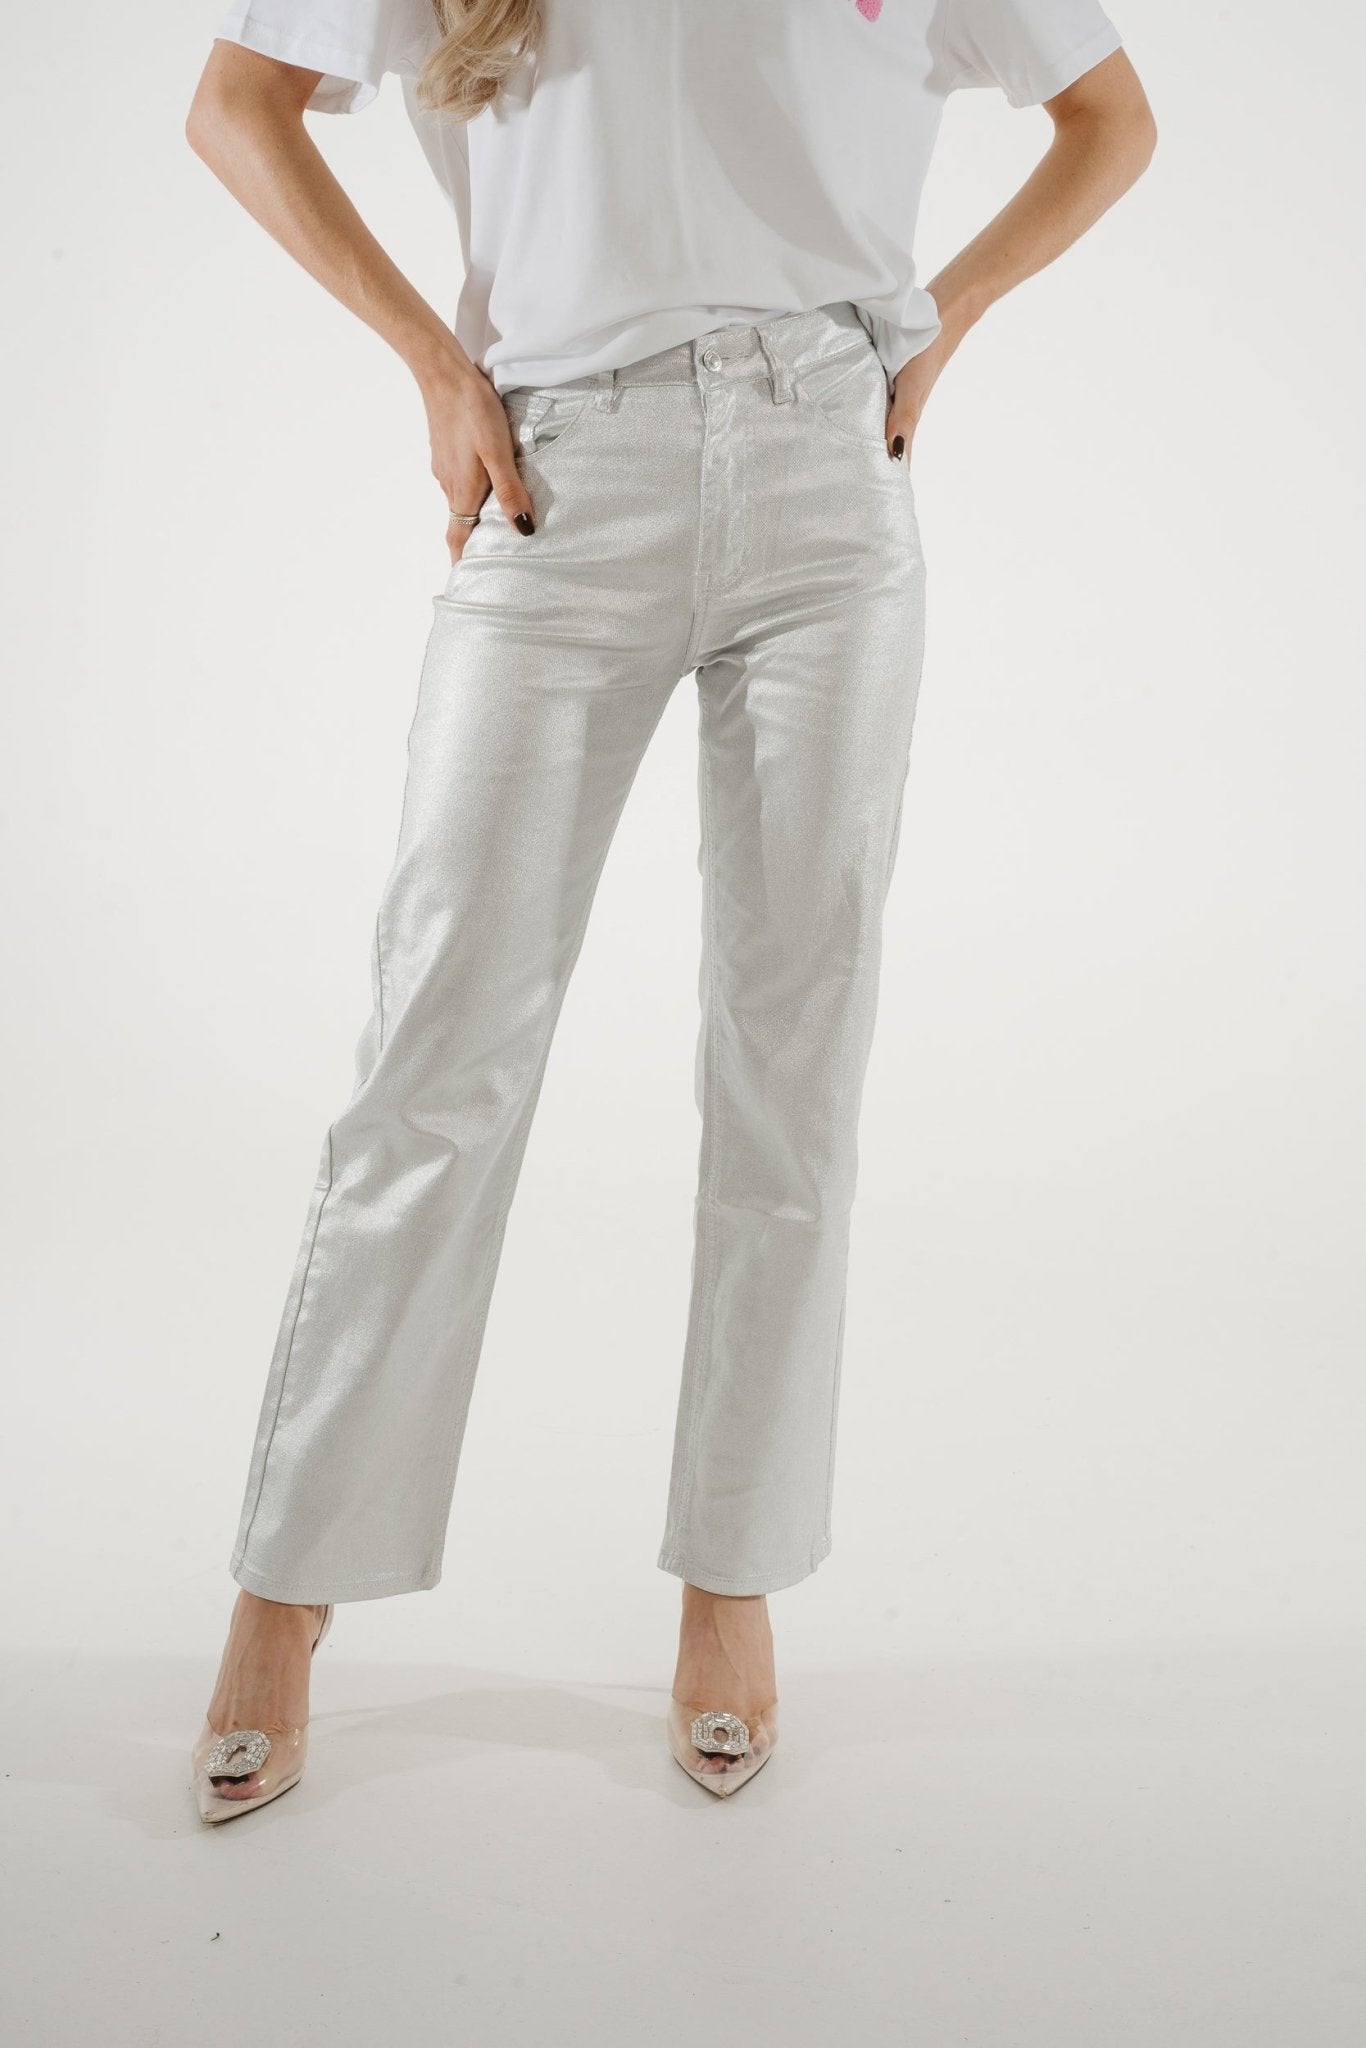 Nancy Metallic Jeans In Silver - The Walk in Wardrobe